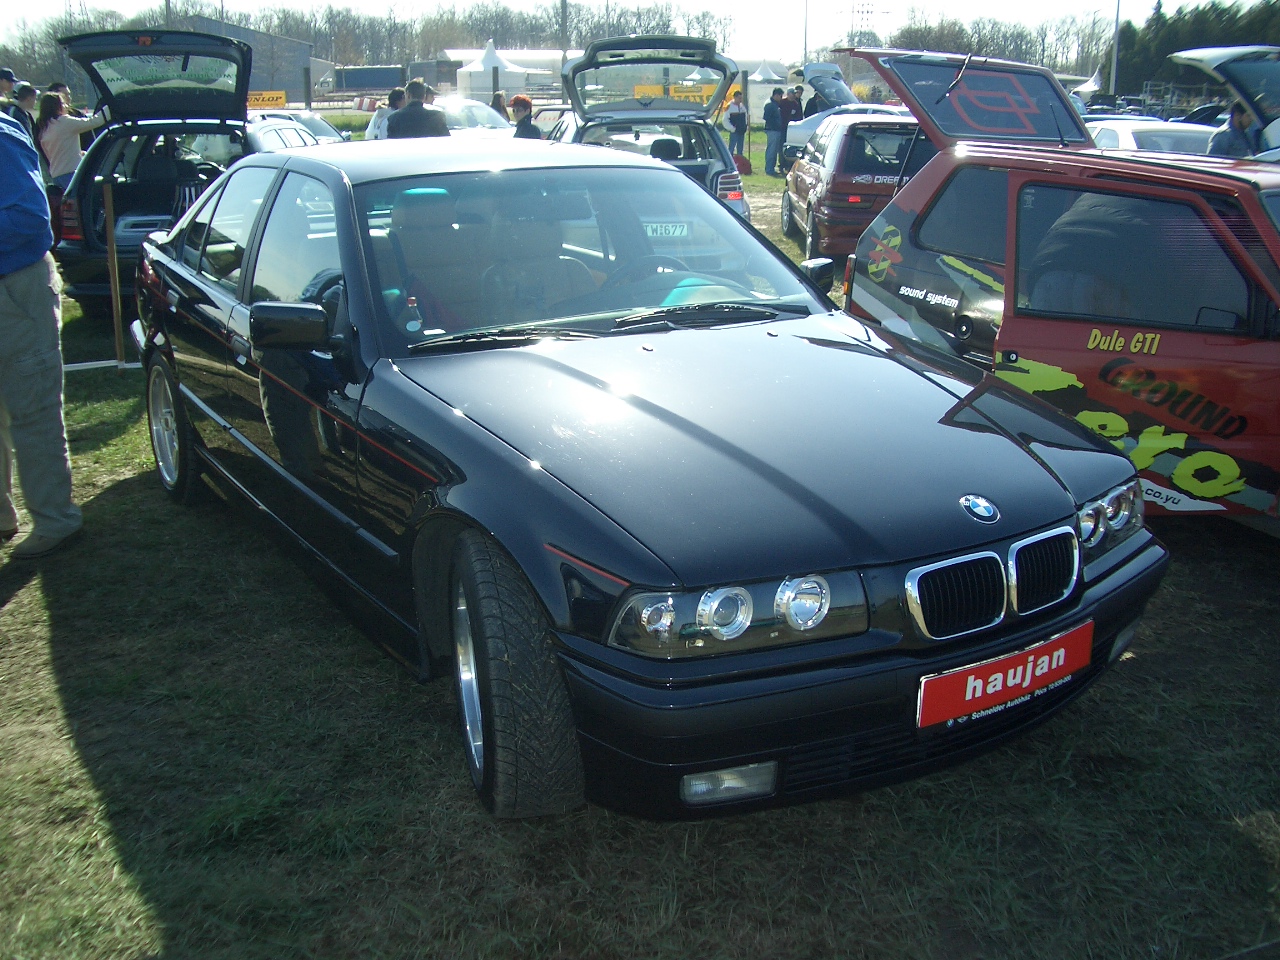 BMW E36 328i